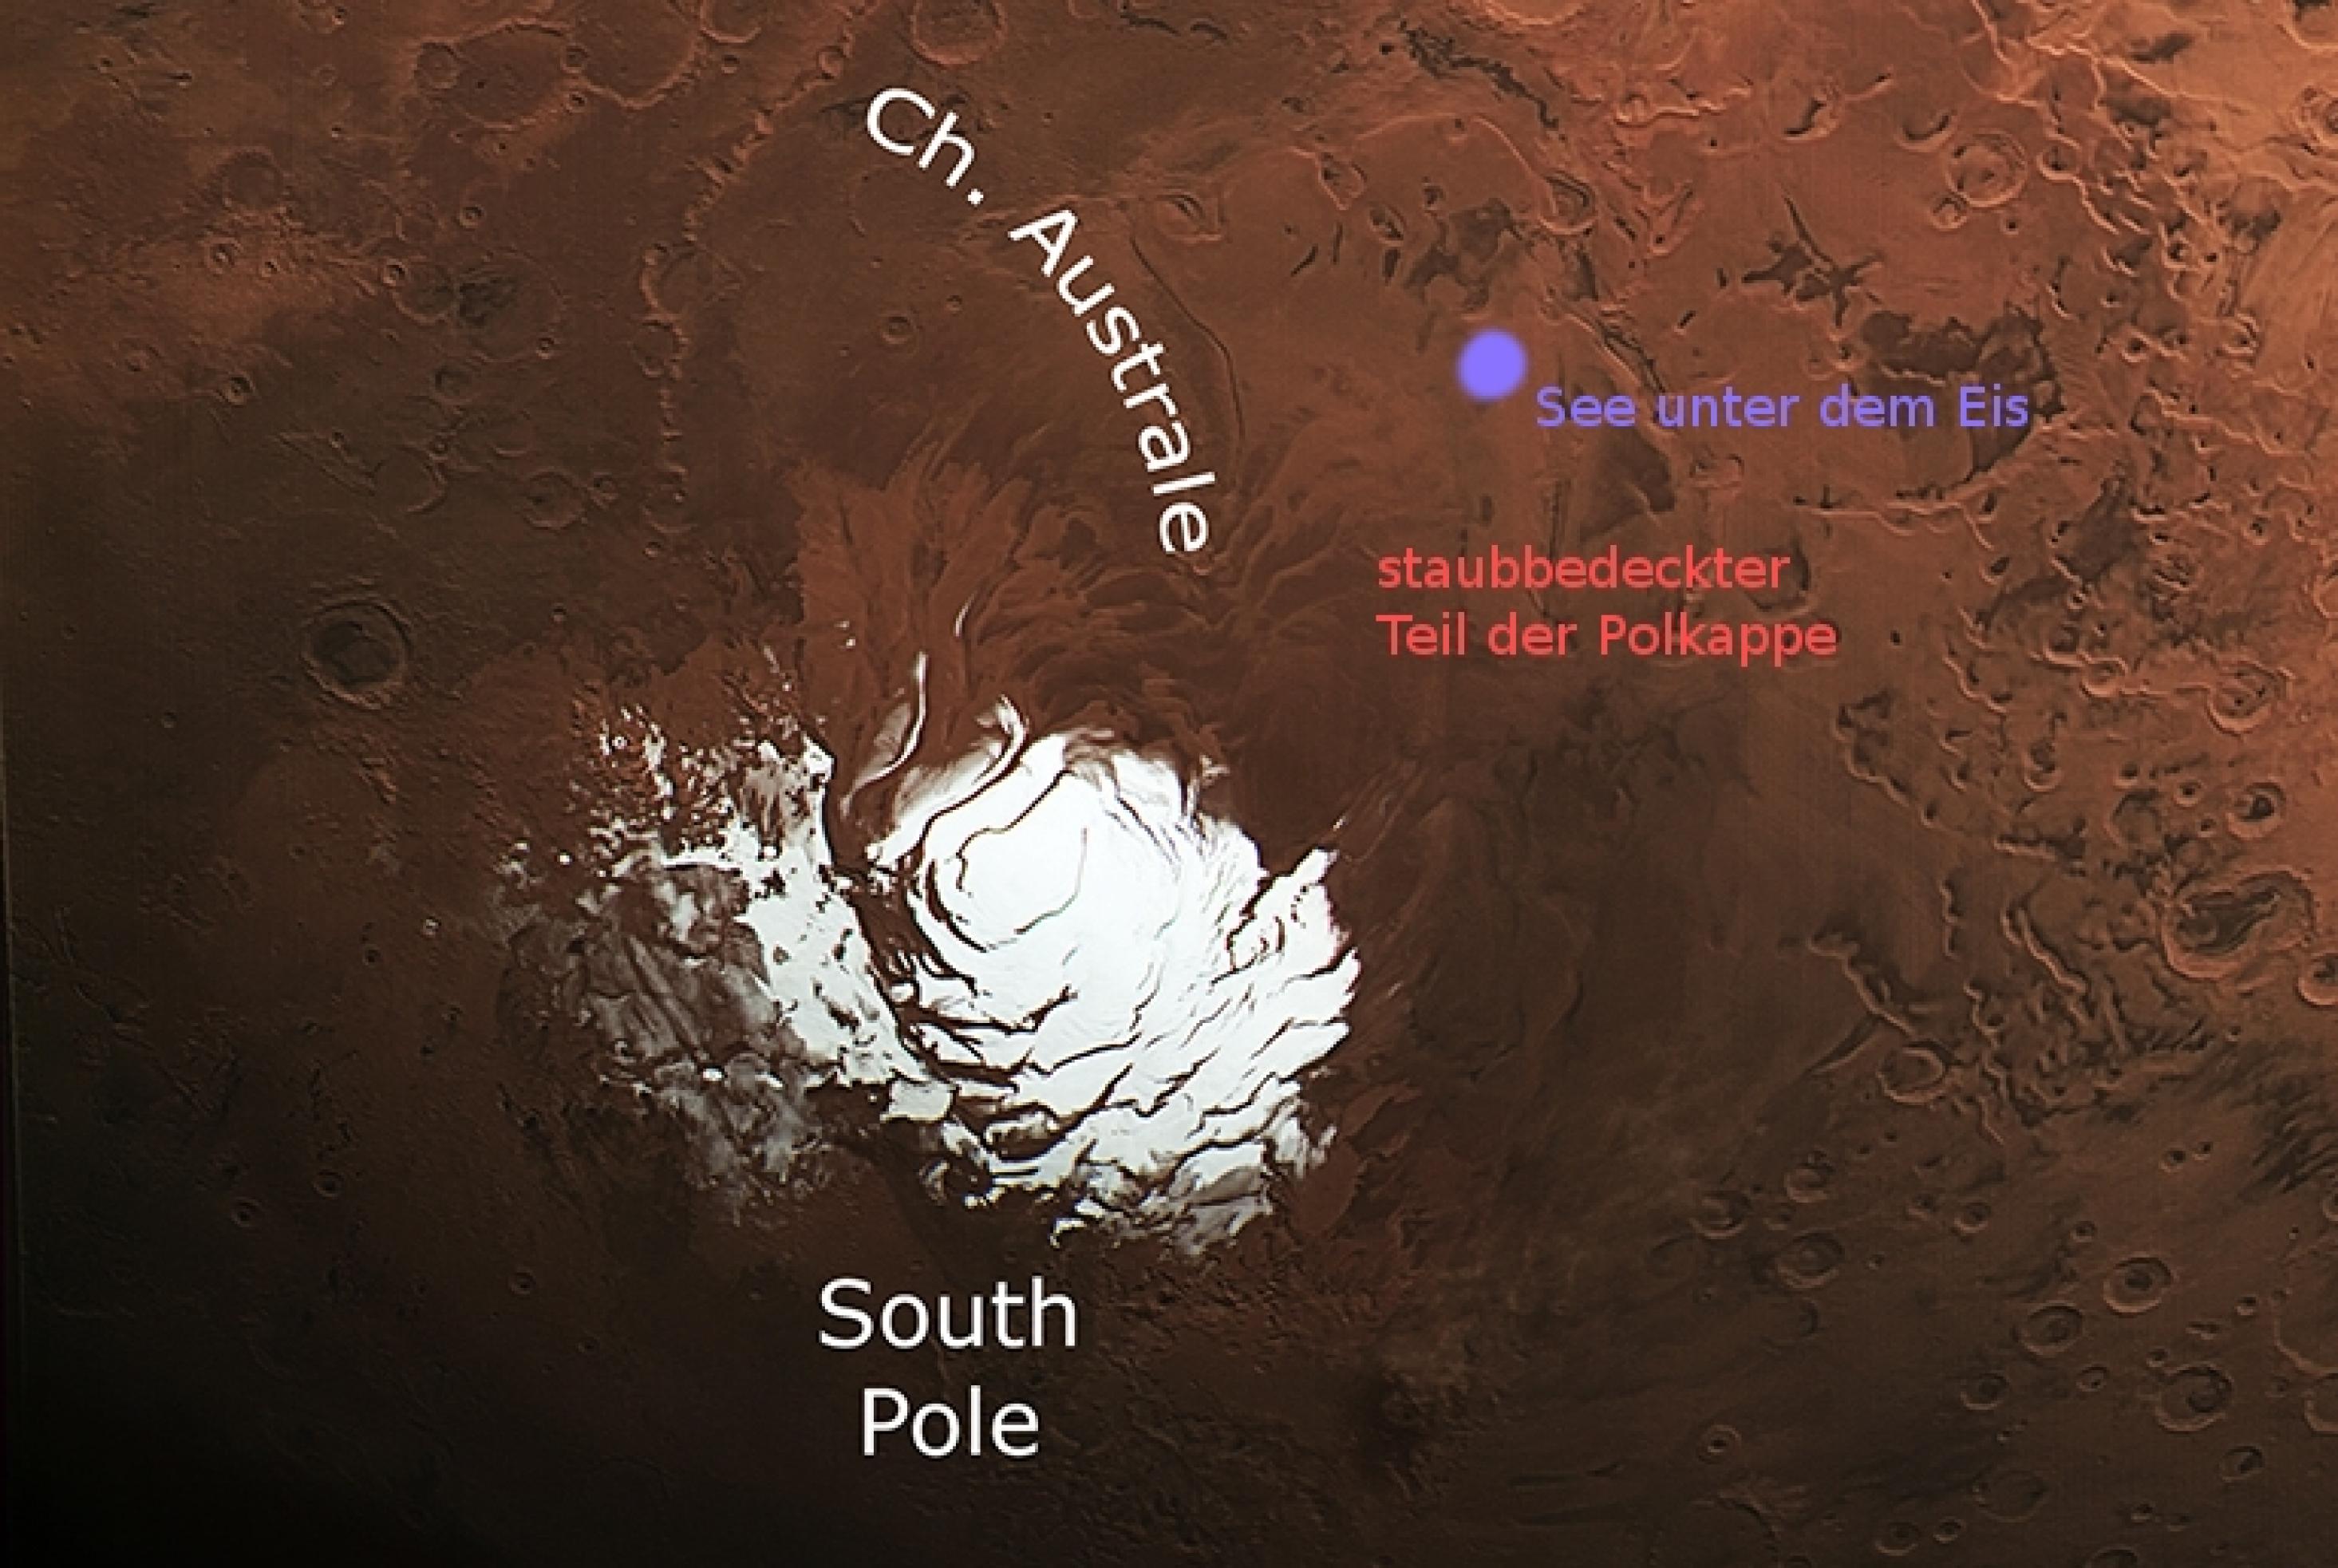 Südpolkappe des Mars, mit markierter Postion des jetzt entdeckten Sees unter dem Eis